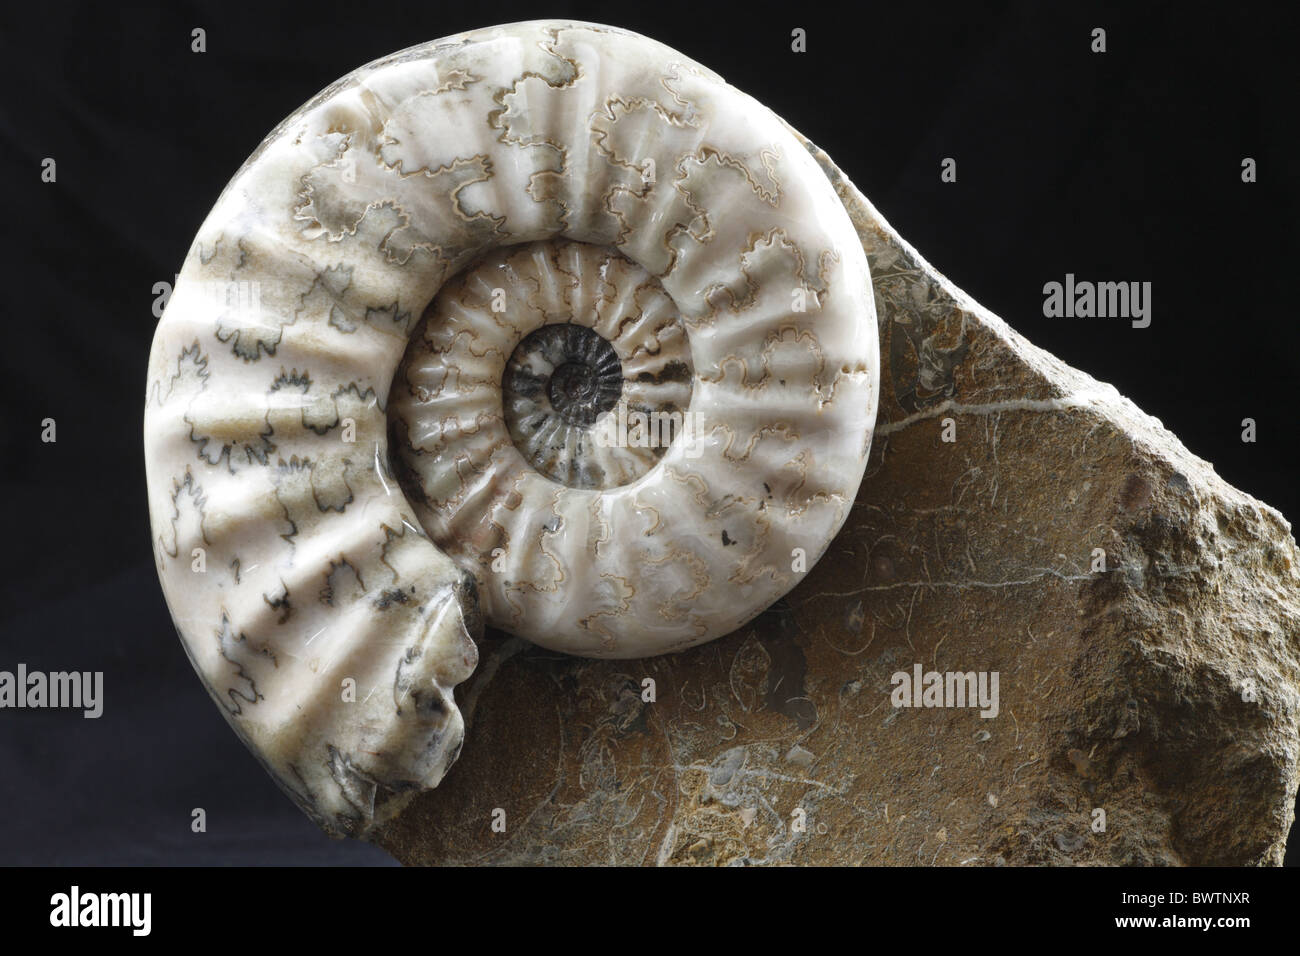 Fósiles de ammonites fosilizados jurassic Inglaterra inglés Aegasteroceras crustáceos moluscos de concha sagittarium fosilización Foto de stock